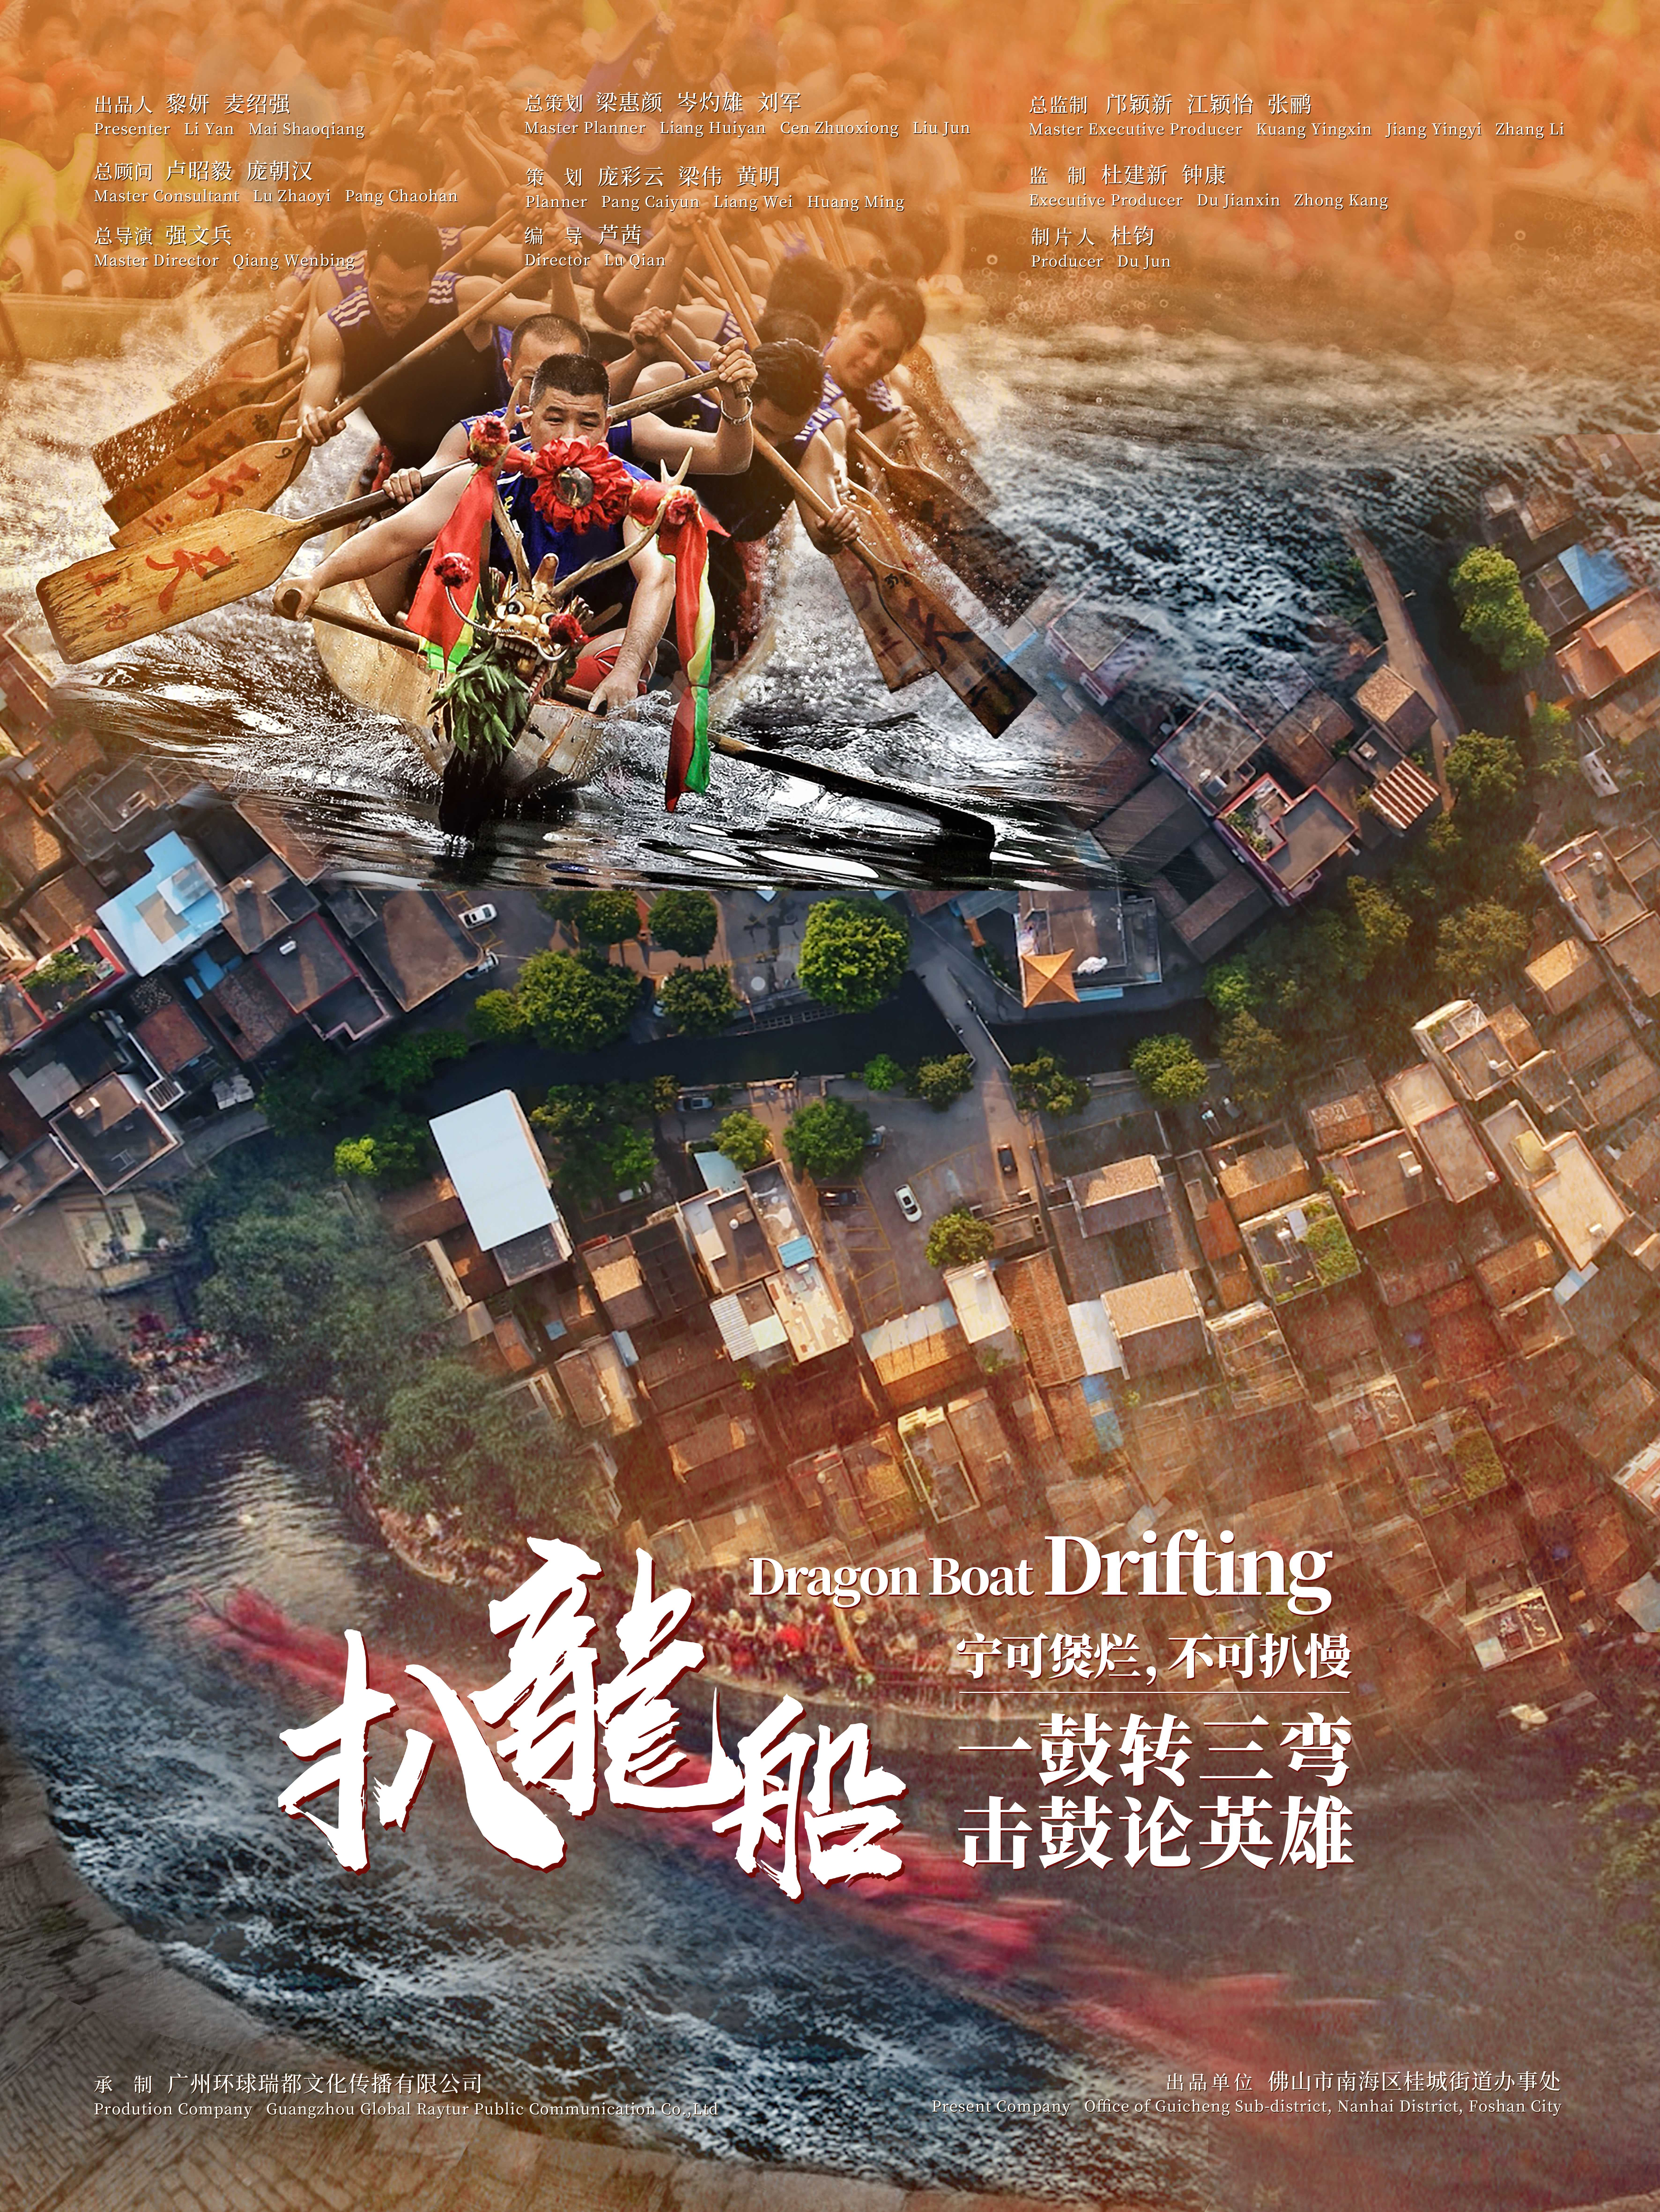 《扒龙船》-广州环球瑞都文化传播有限公司